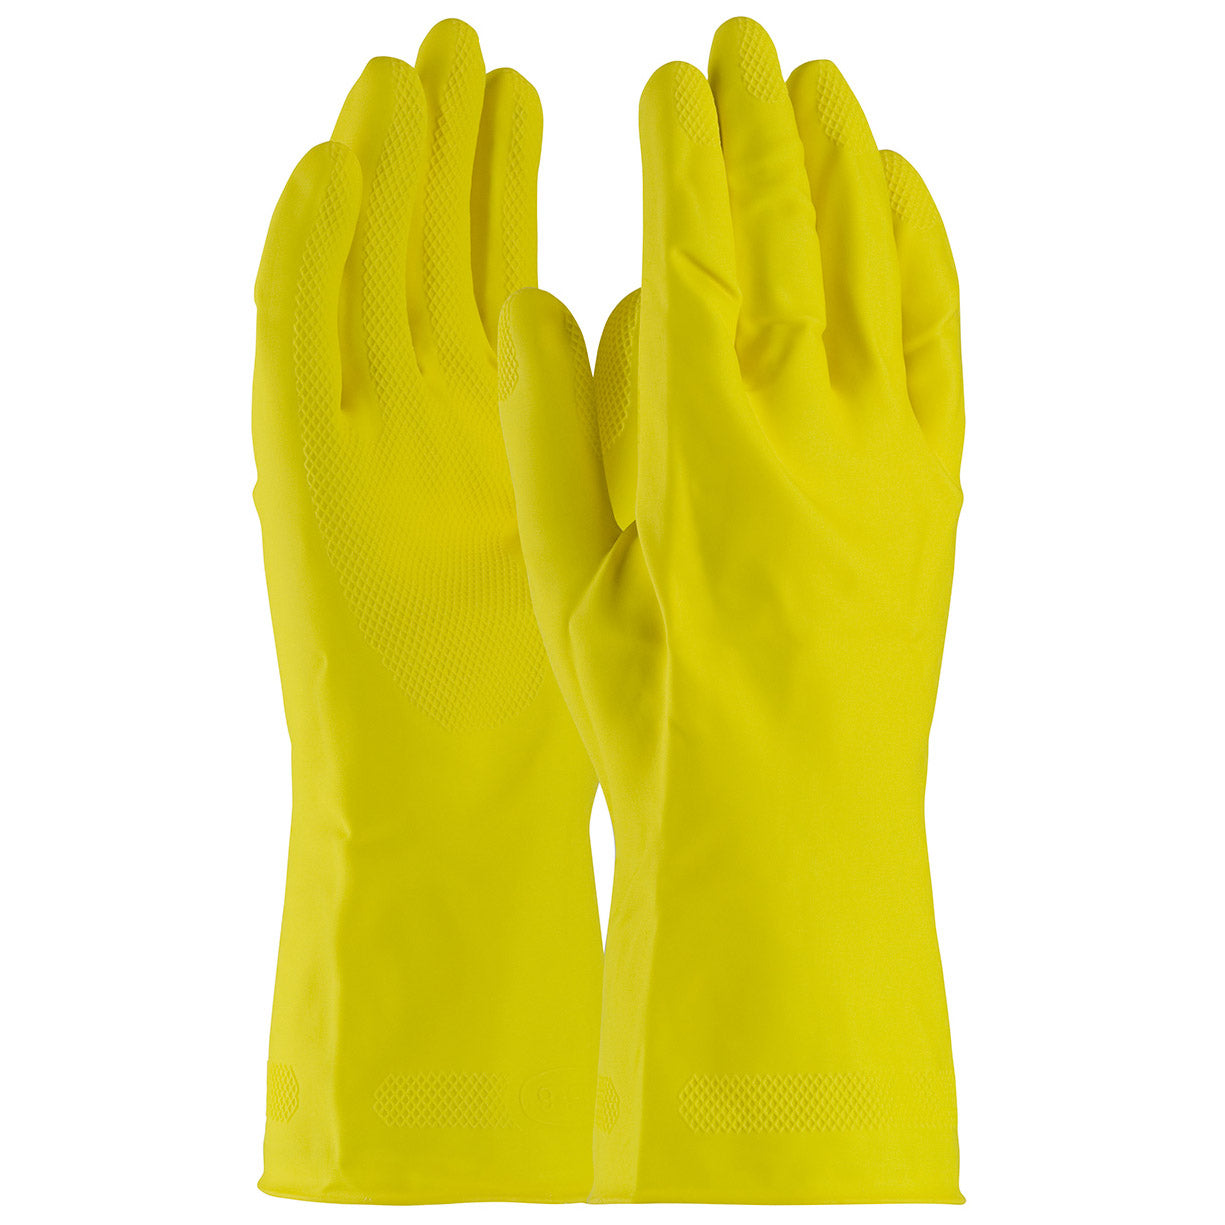 Rubber Gloves - 1 dozen - XL (48-L162Y)